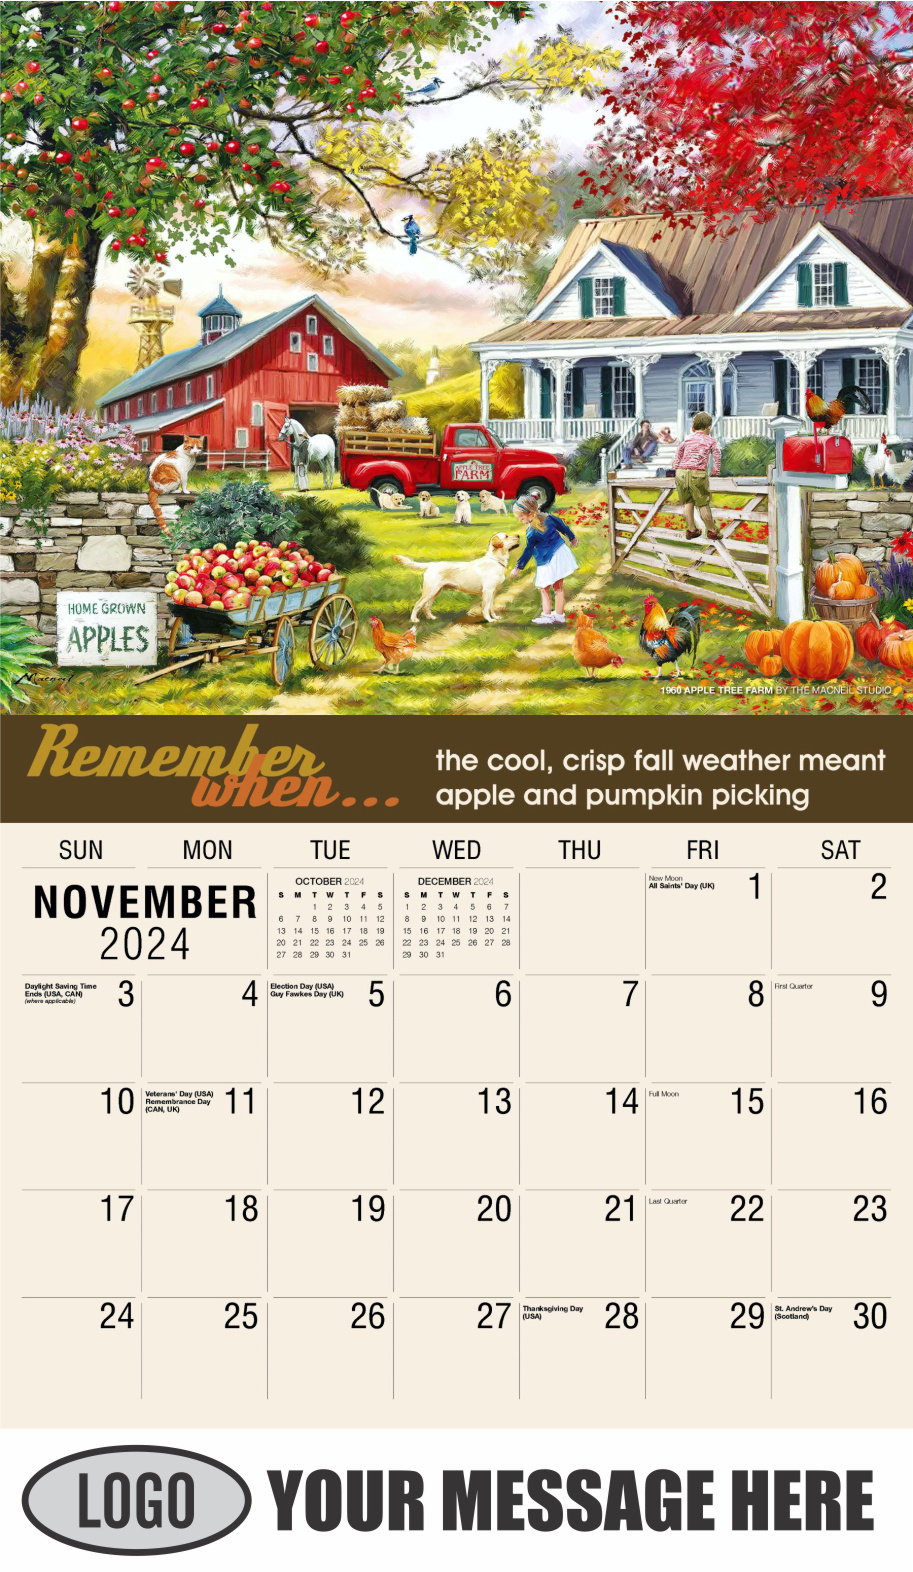 Remember When 2024 Business Advertising Calendar - November